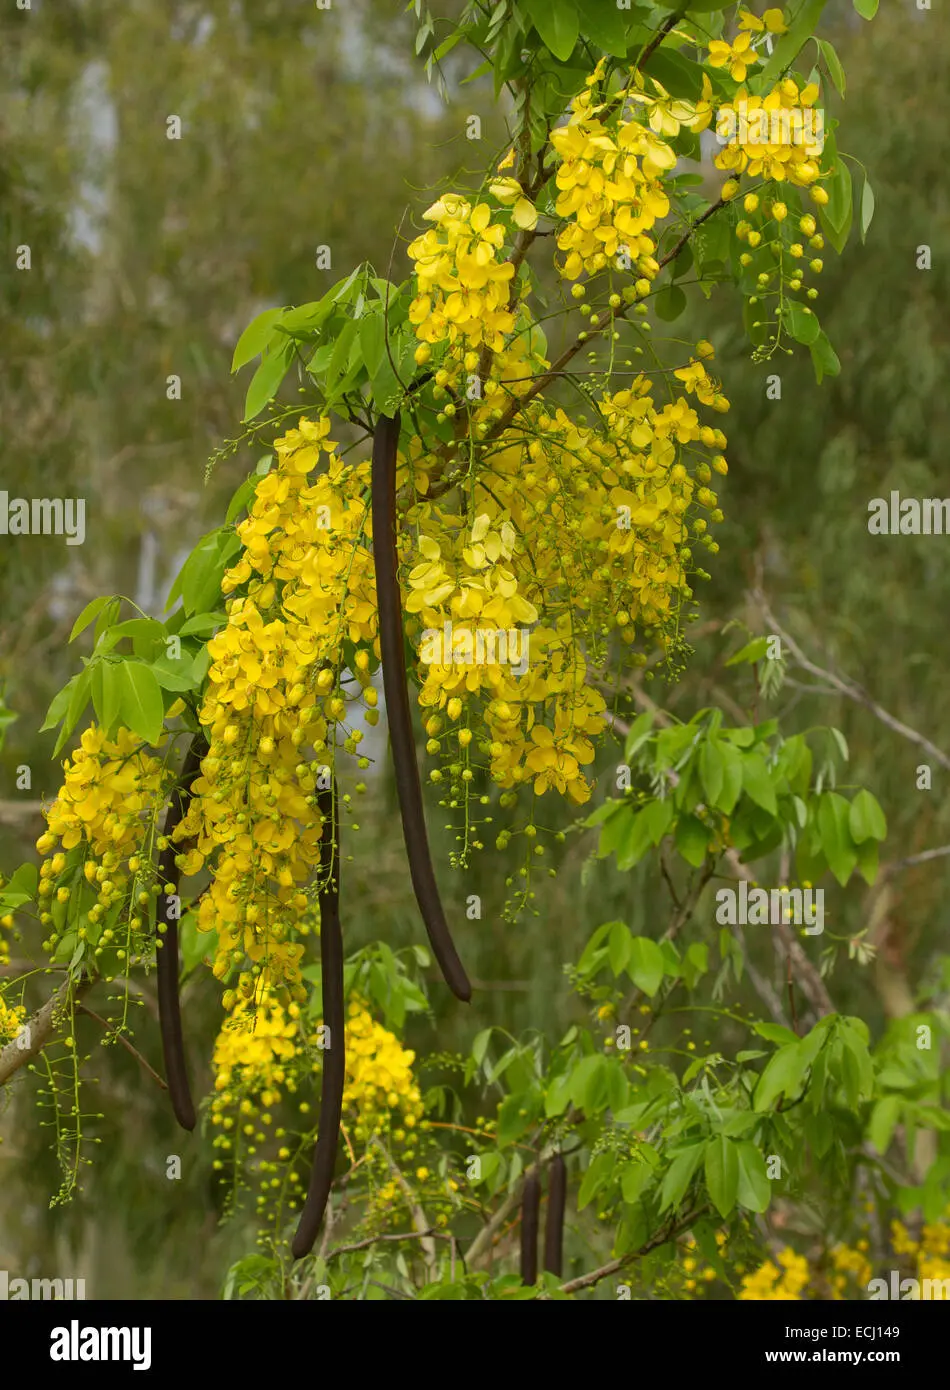 arbol con flores amarillas y vainas - Qué significa el árbol de flamboyán